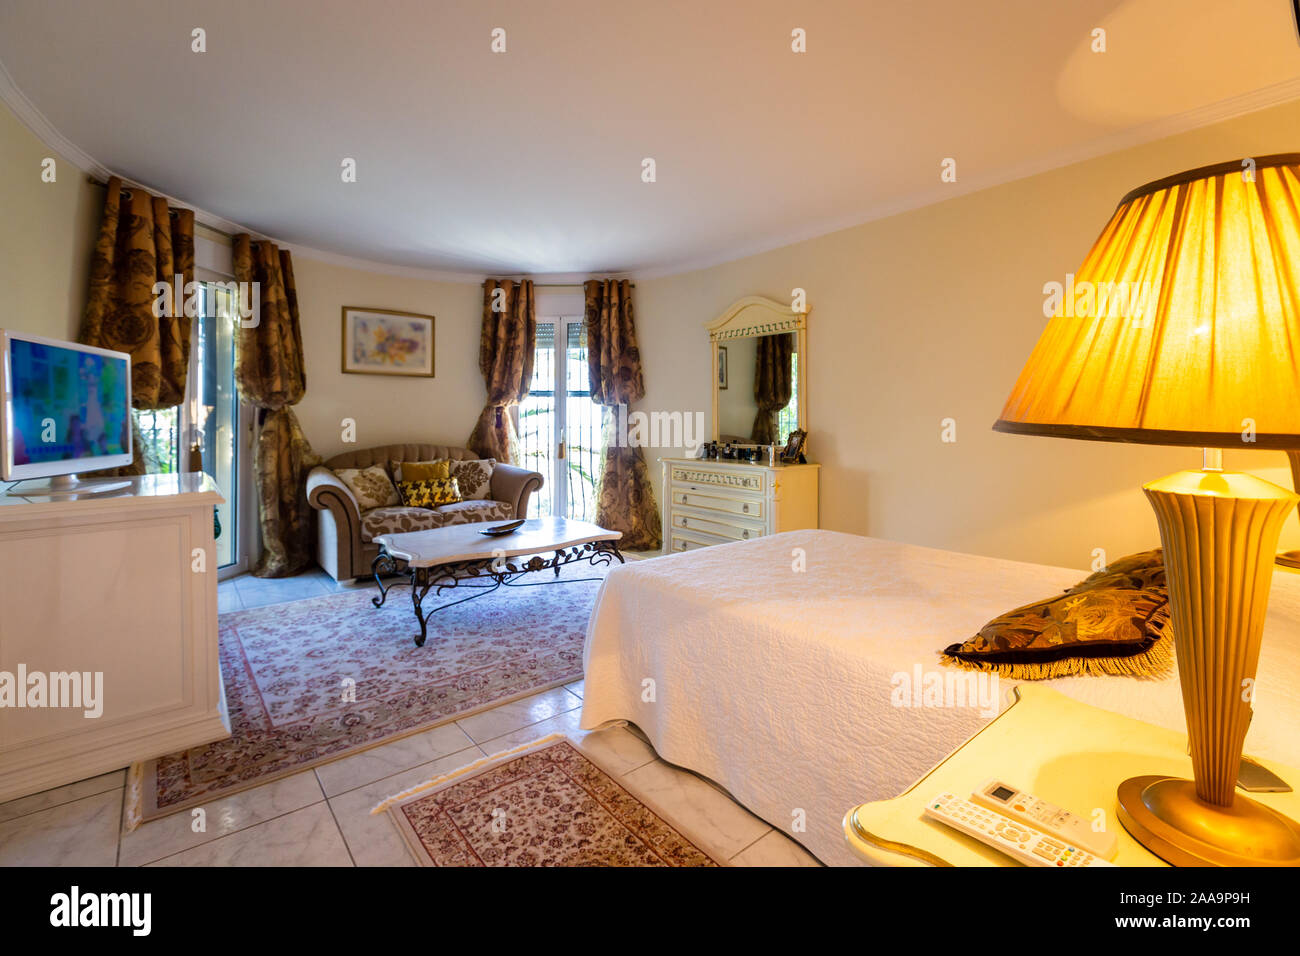 Dormitorio en estilo clásico, mobiliario, iluminación suave. Foto de stock